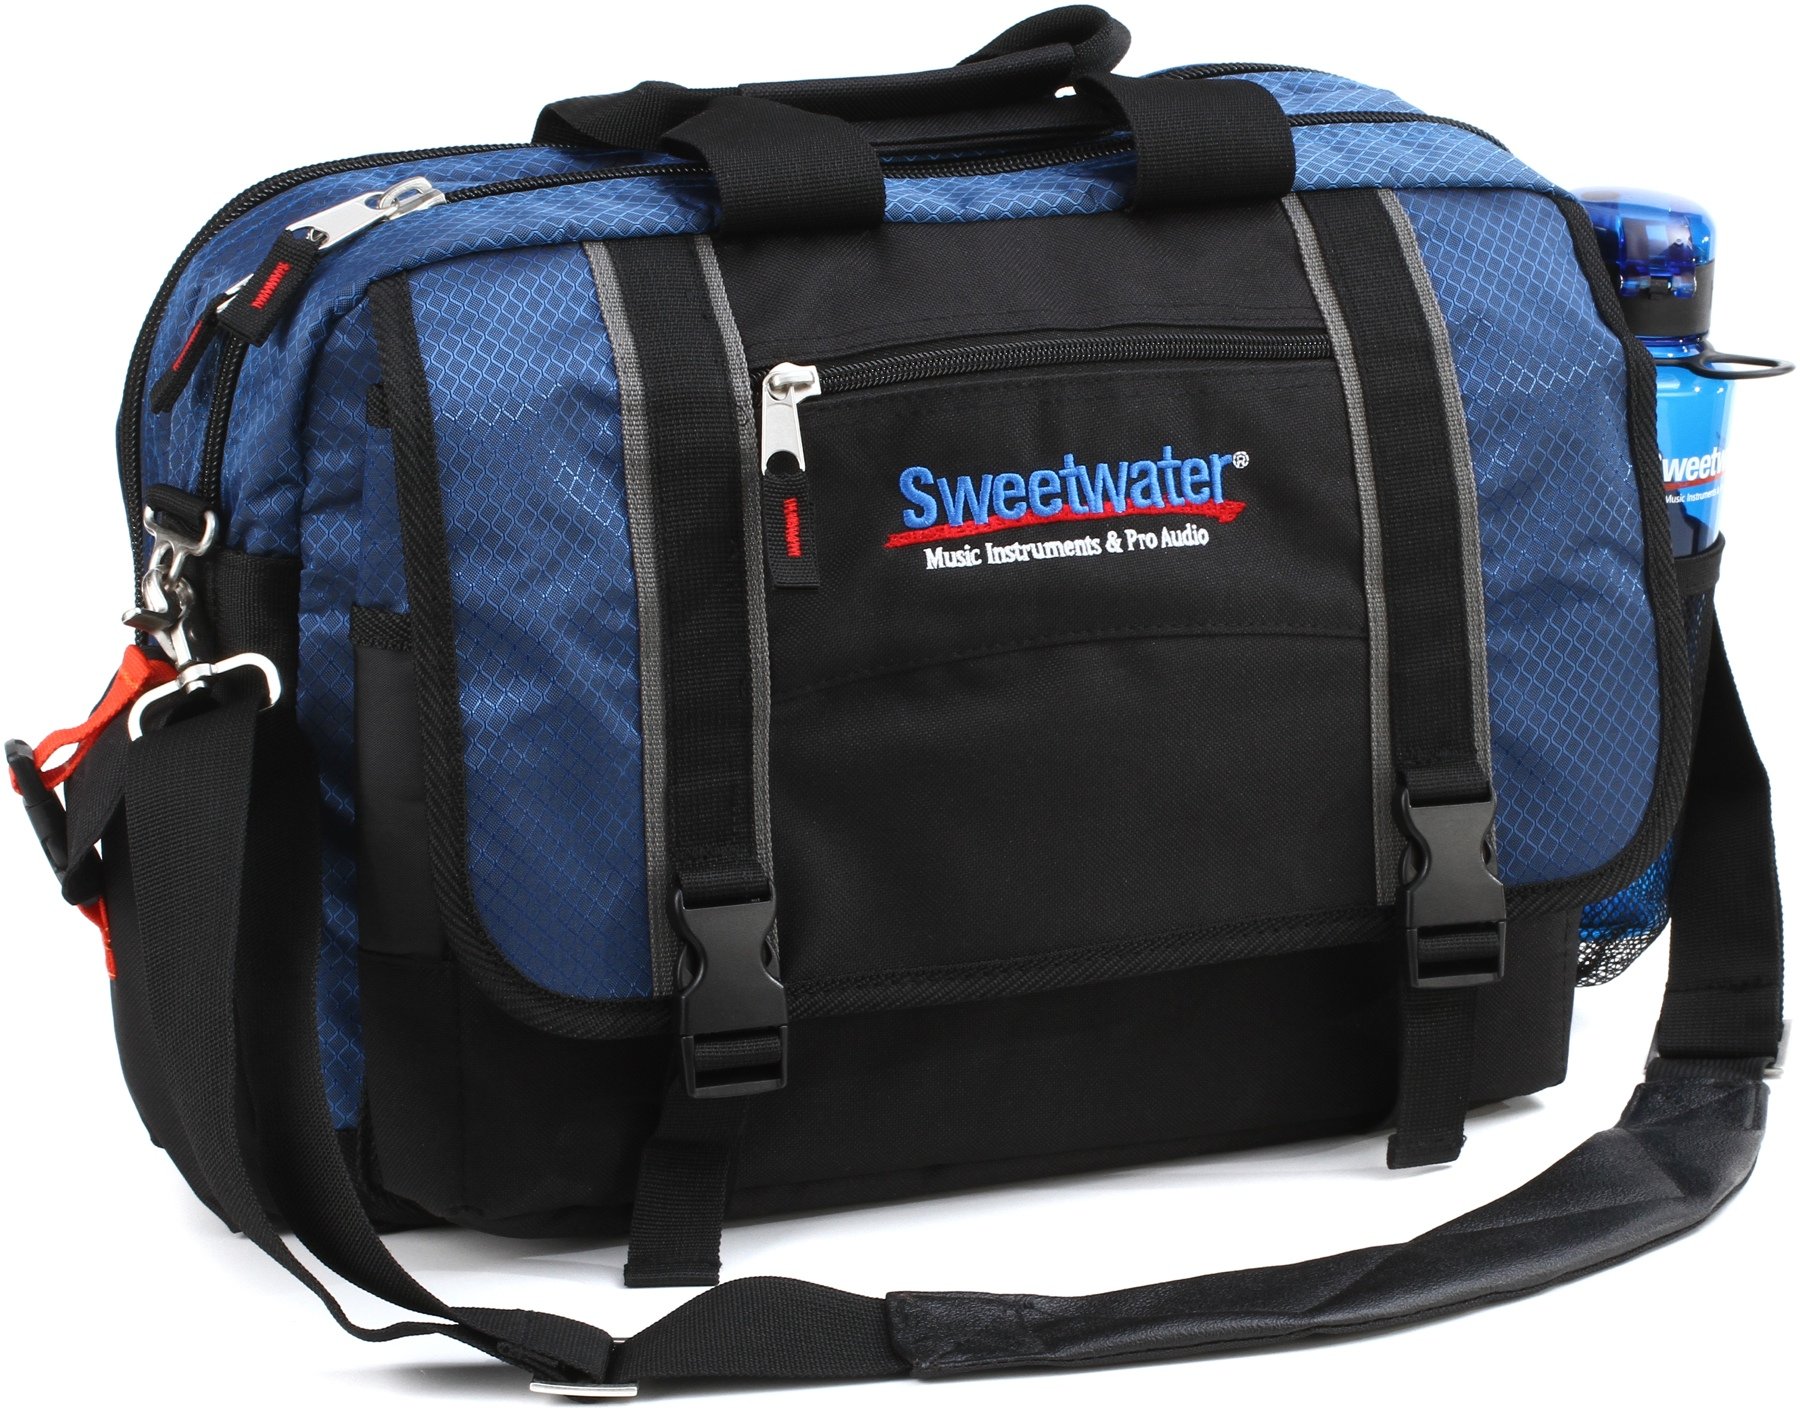 Adjustable Strap Large Work Bag Purse Fits 15 Inch Laptop ...